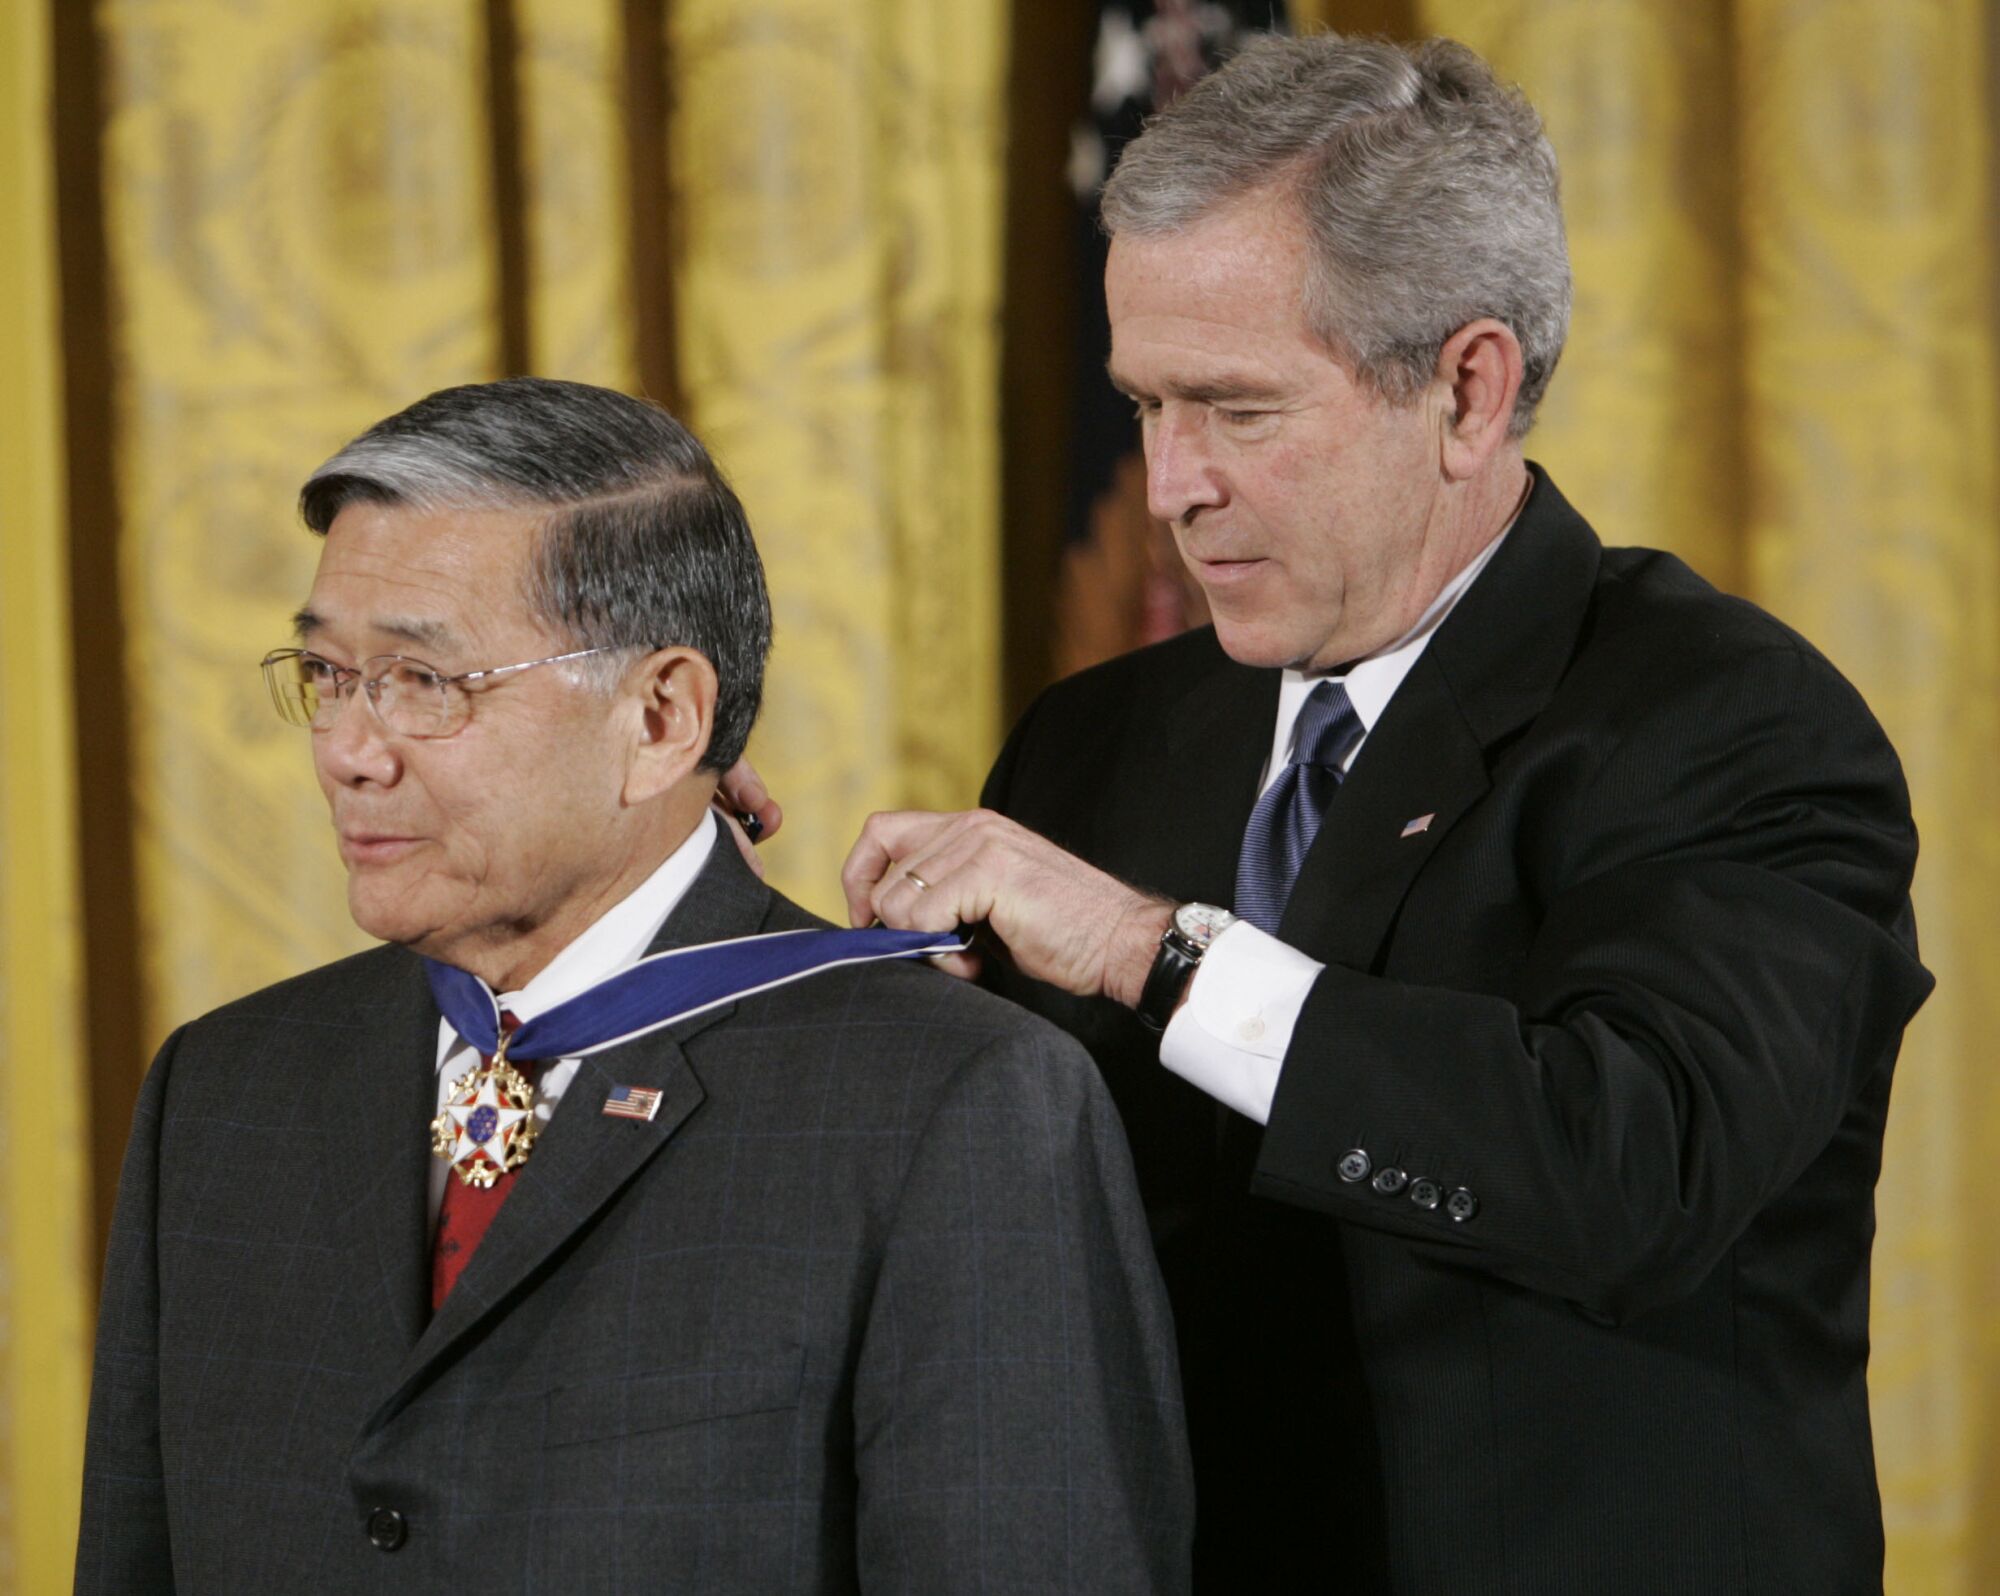 Dönemin Başkanı George W. Bush, sağda, Başkanlık Özgürlük Madalyasını Norman Mineta'ya veriyor.